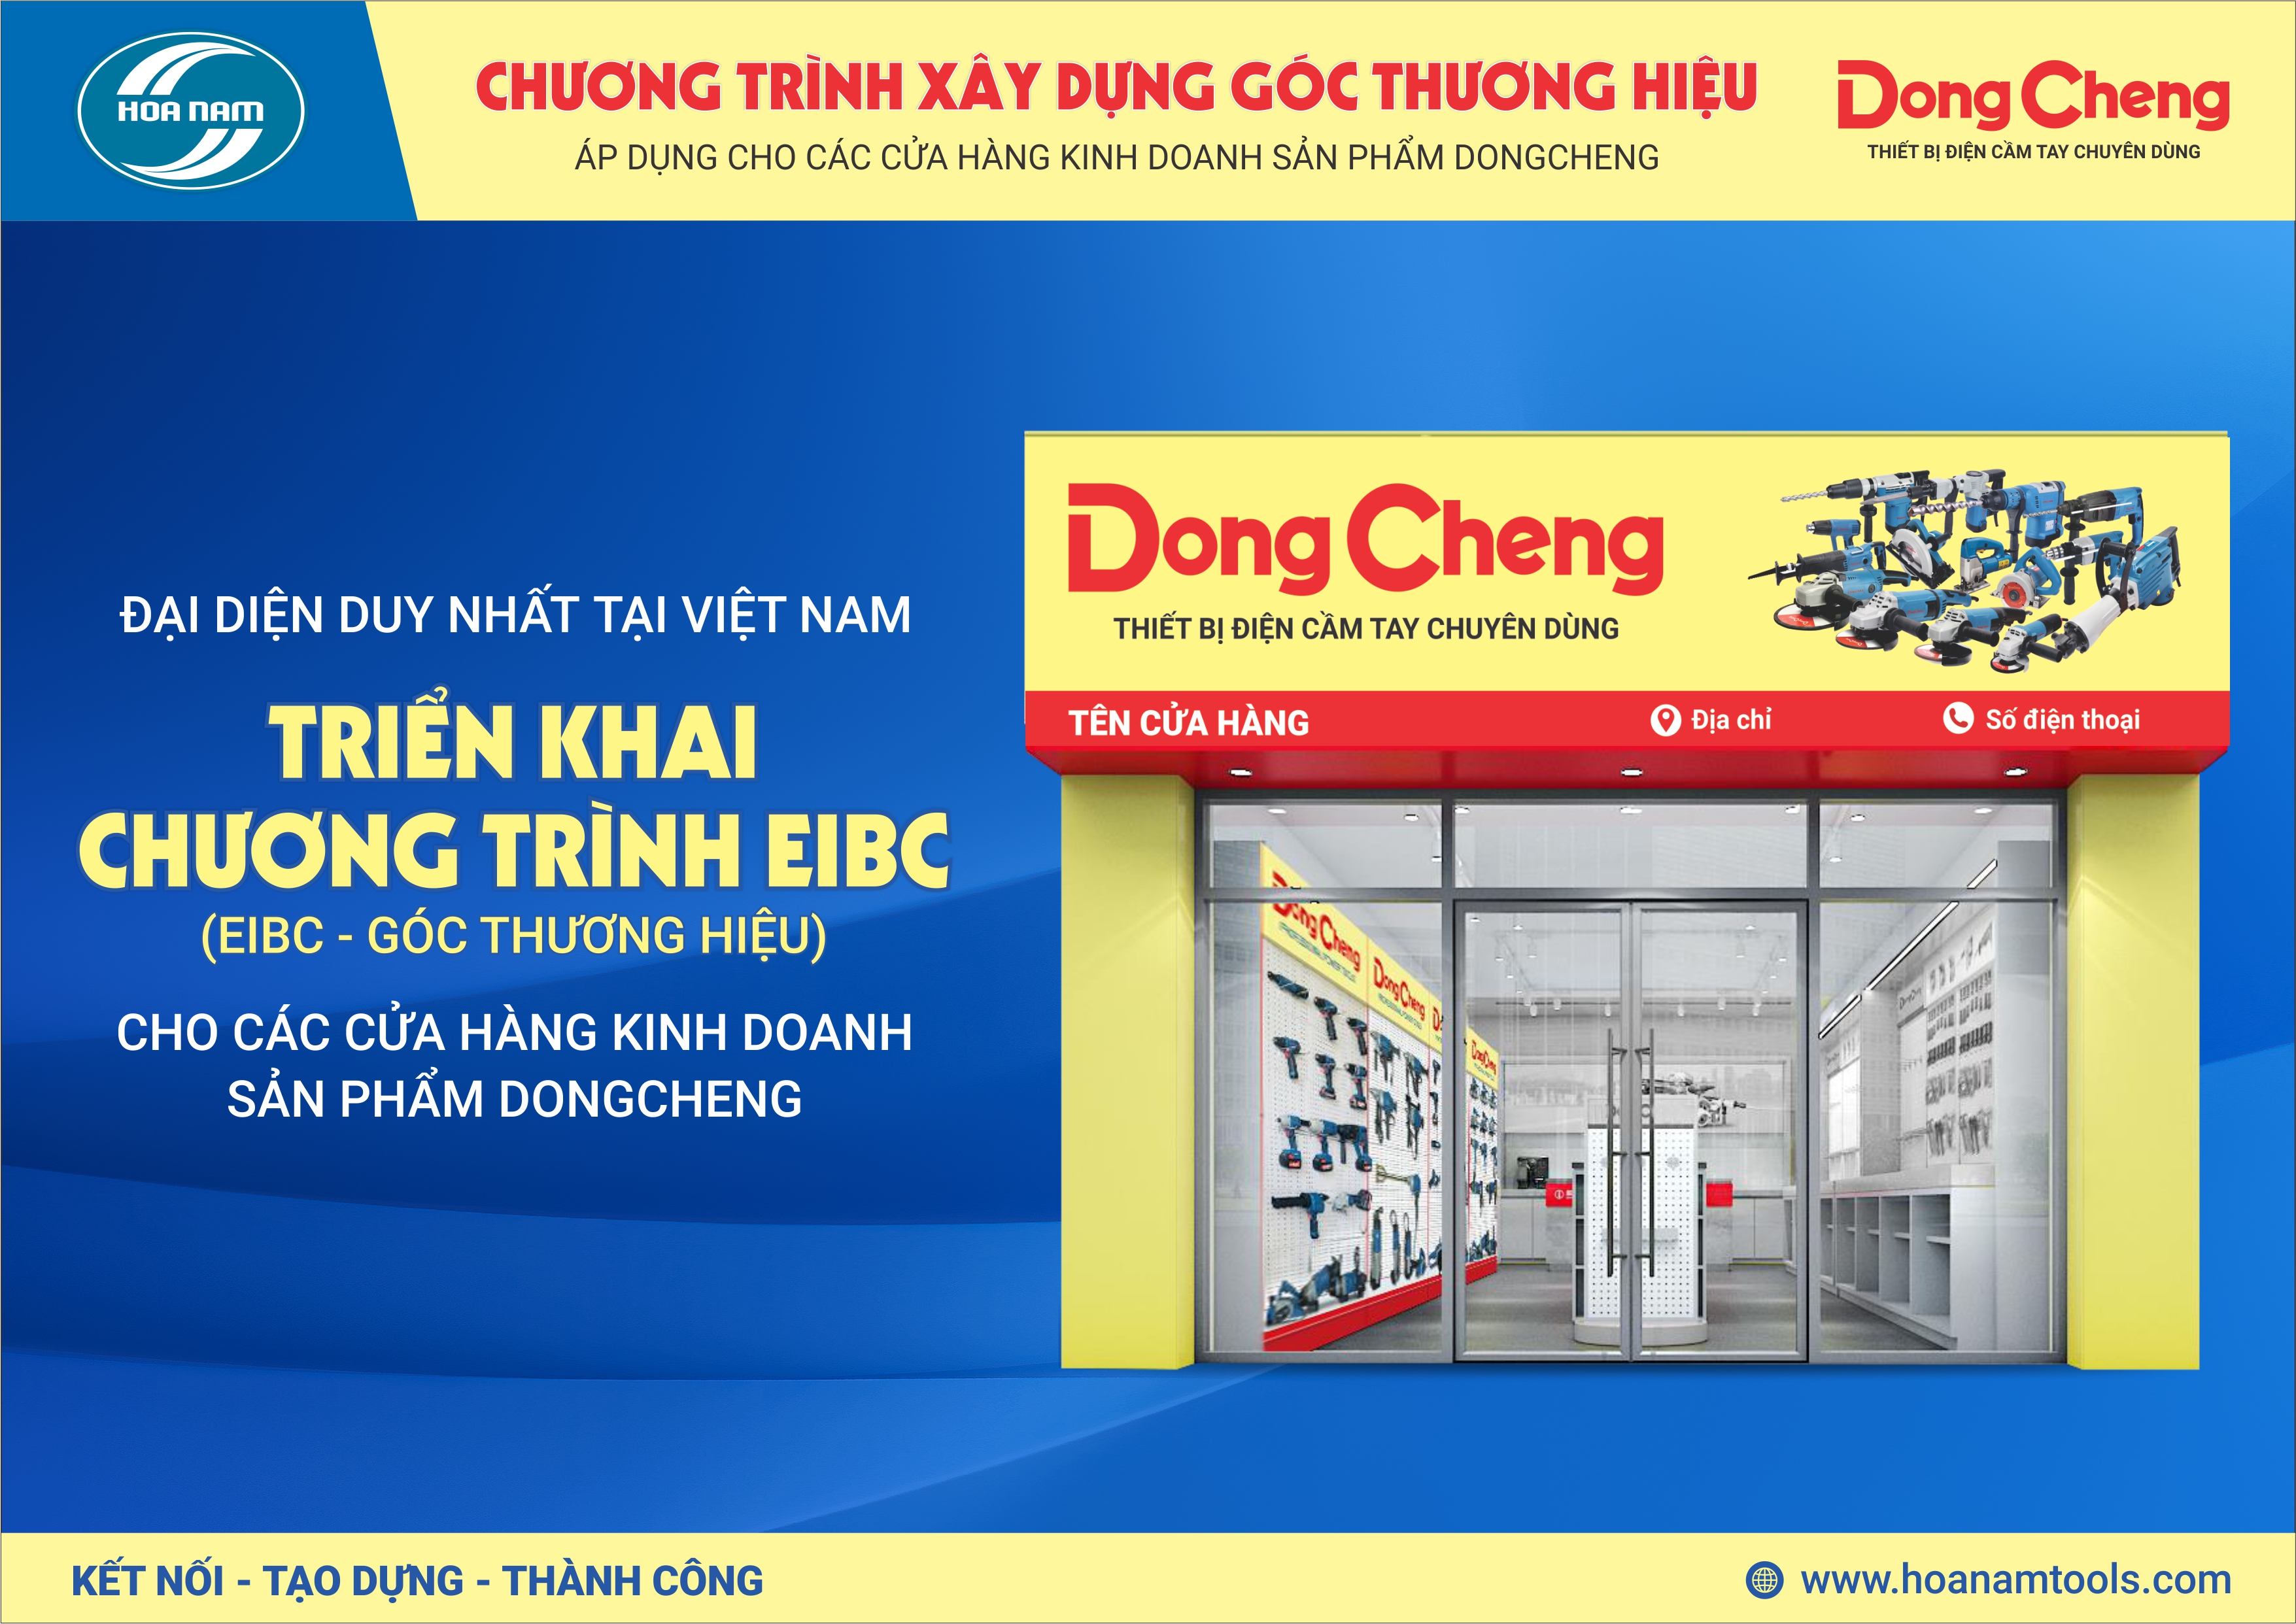 Chương trình xây dựng góc thương hiệu DongCheng năm 2023